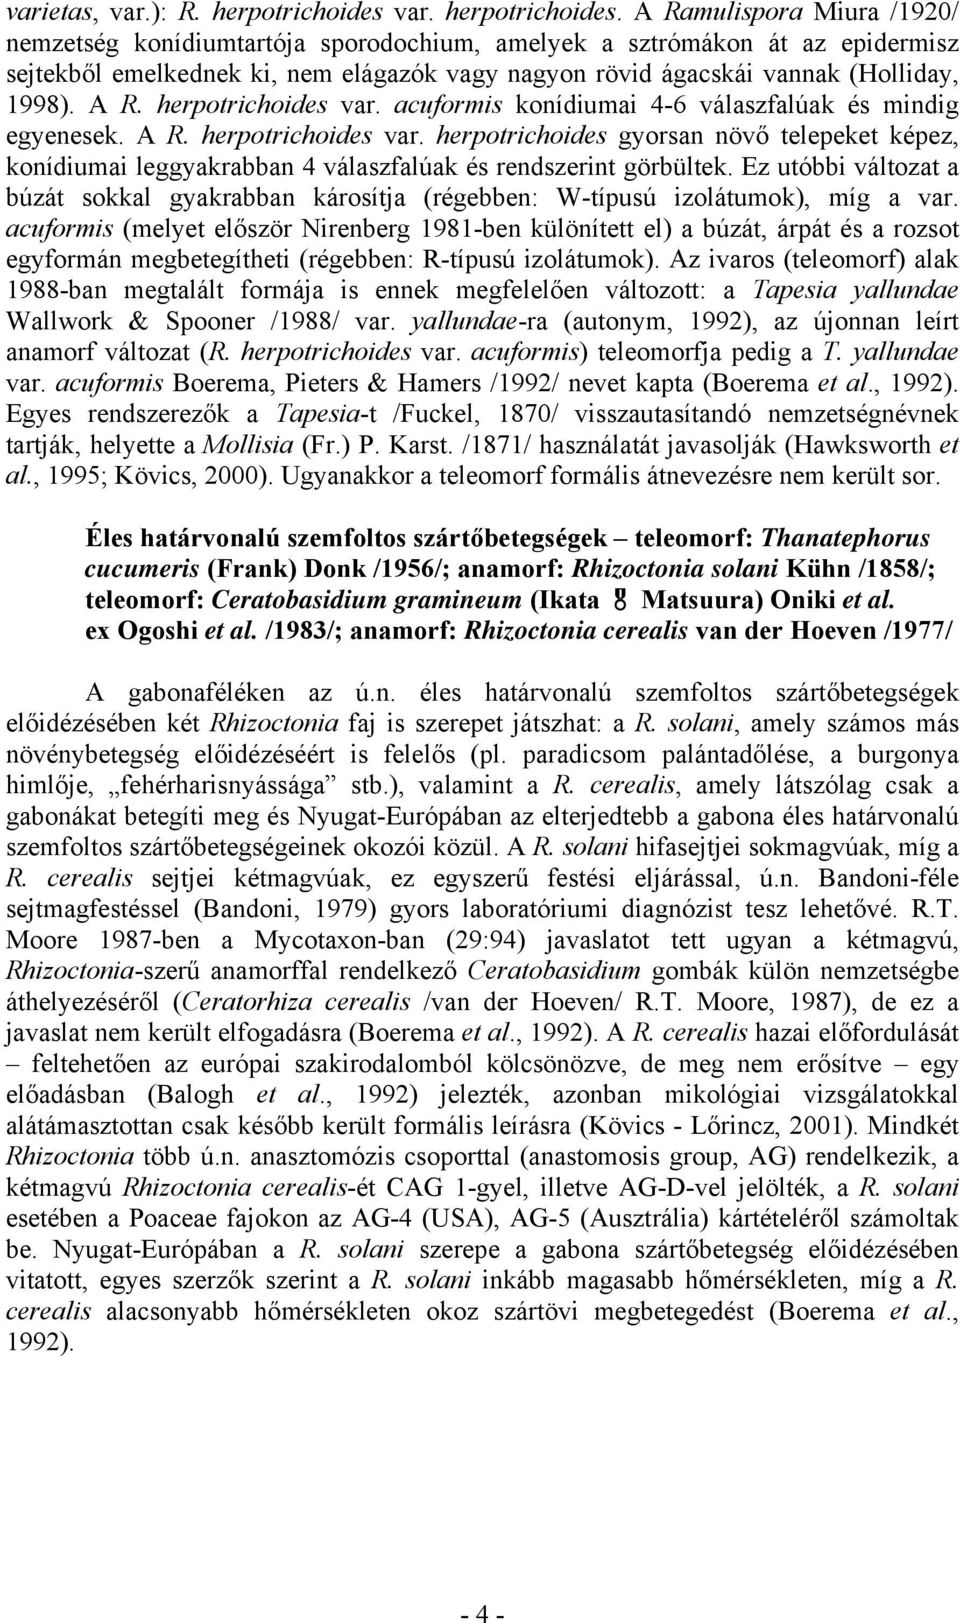 A Ramulispora Miura /1920/ nemzetség konídiumtartója sporodochium, amelyek a sztrómákon át az epidermisz sejtekből emelkednek ki, nem elágazók vagy nagyon rövid ágacskái vannak (Holliday, 1998). A R.